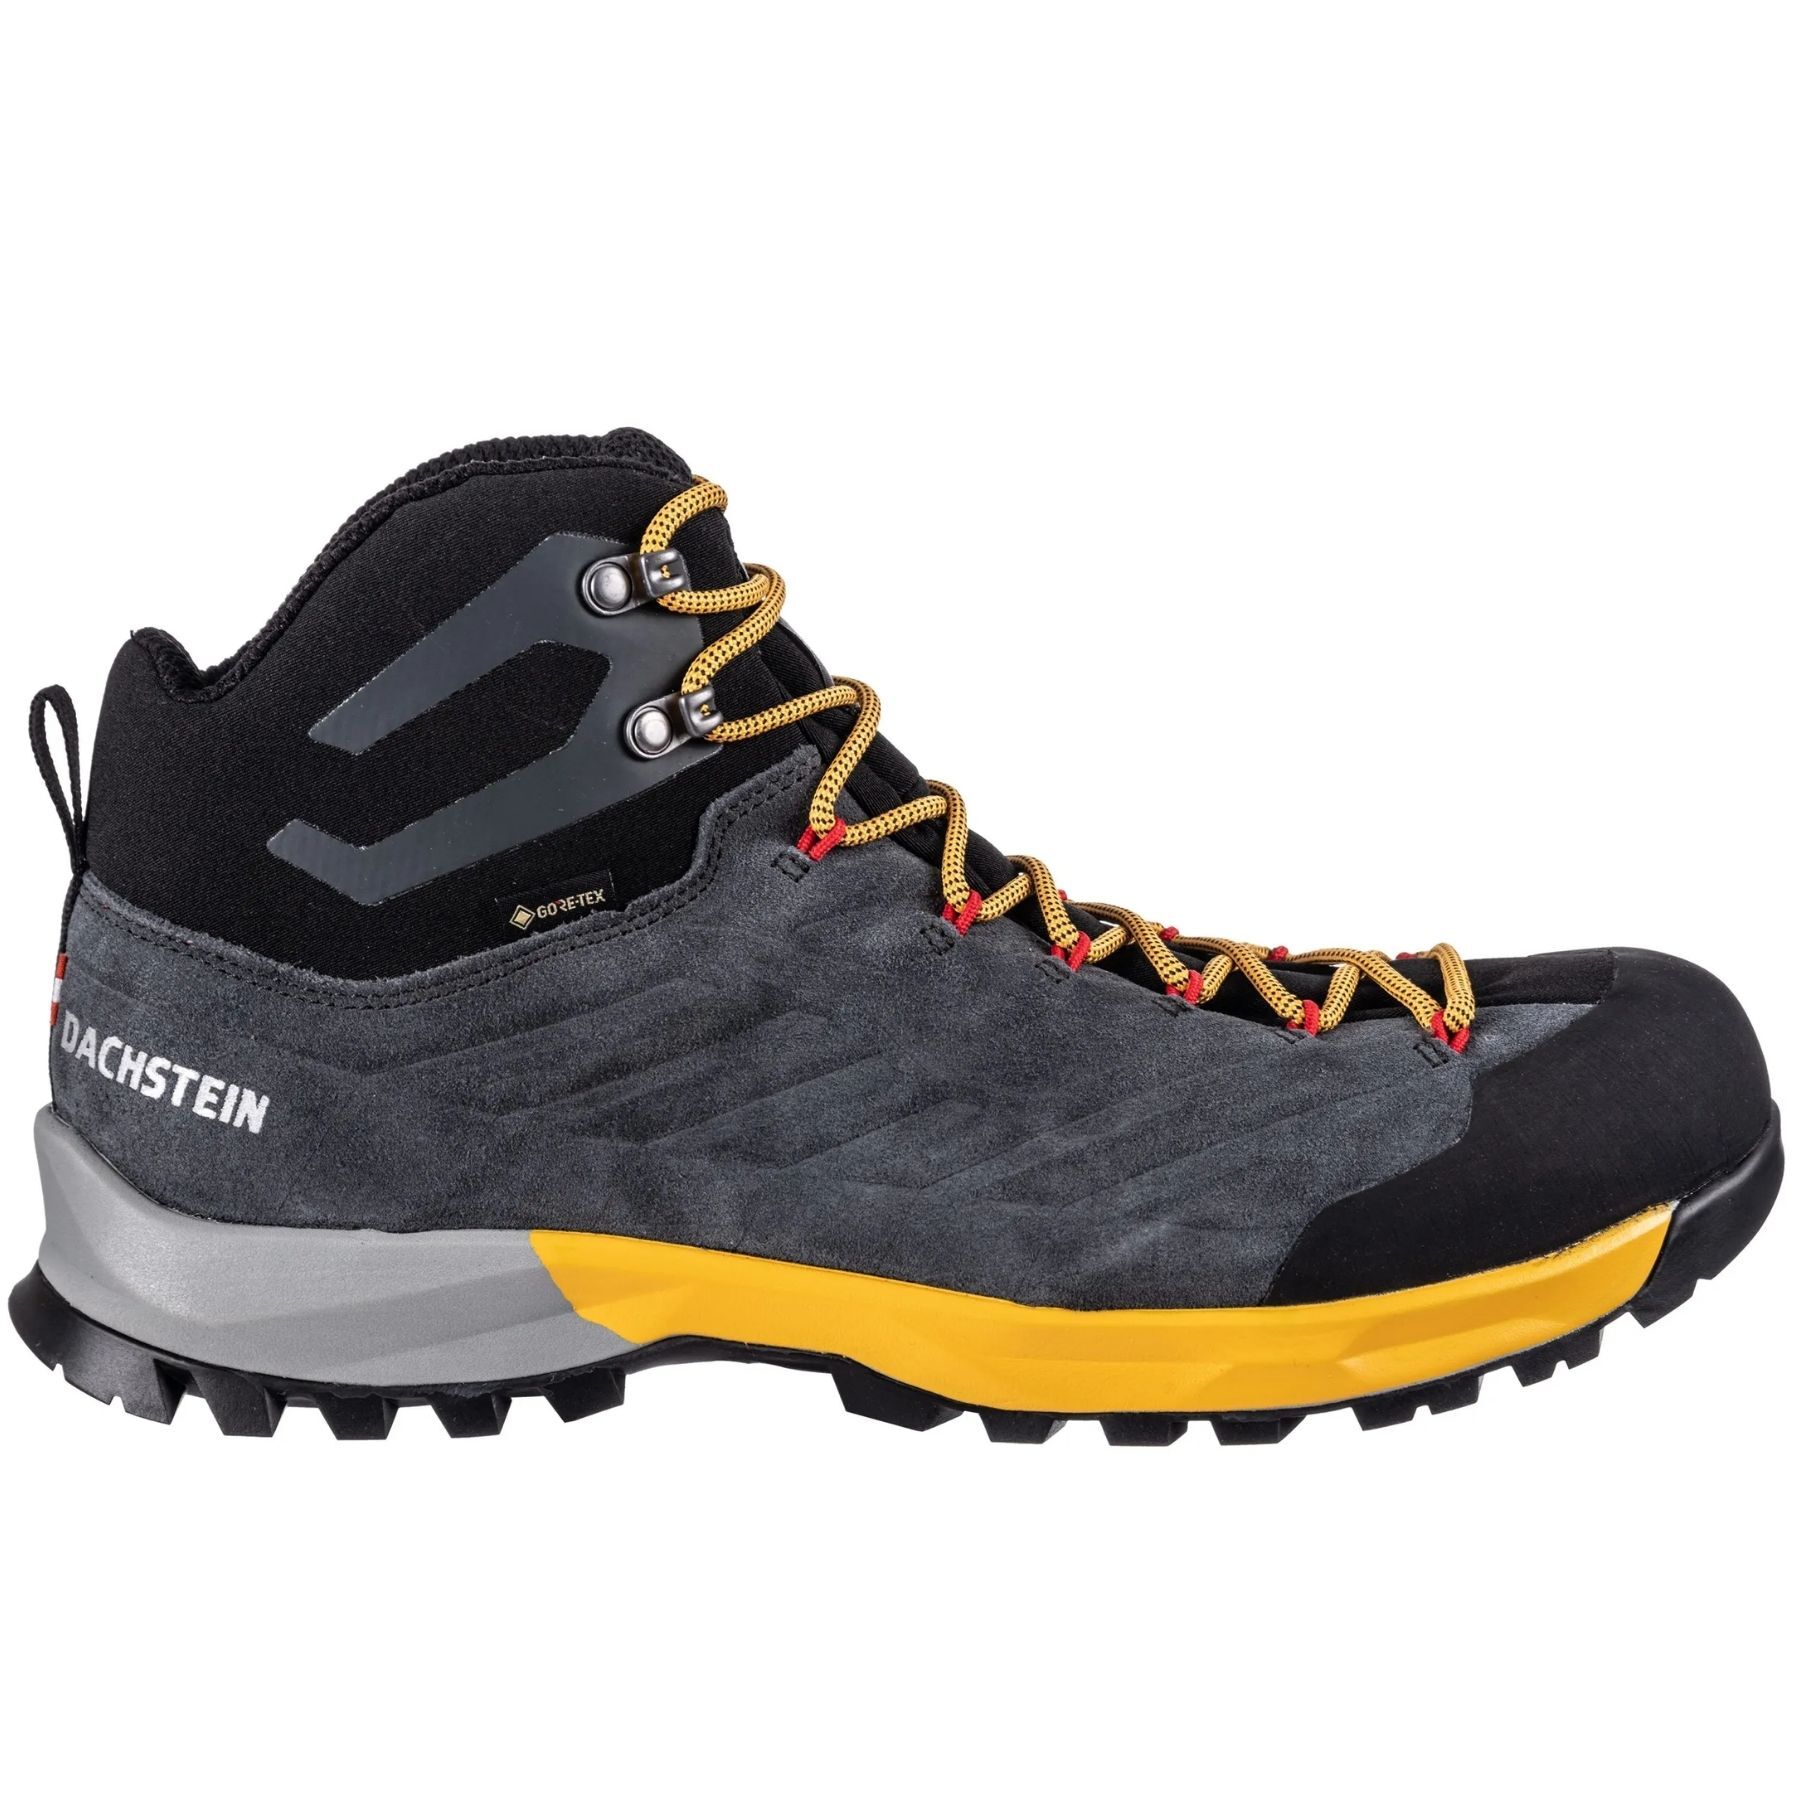 Dachstein SF-21 MC GTX - Hiking shoes - Men's